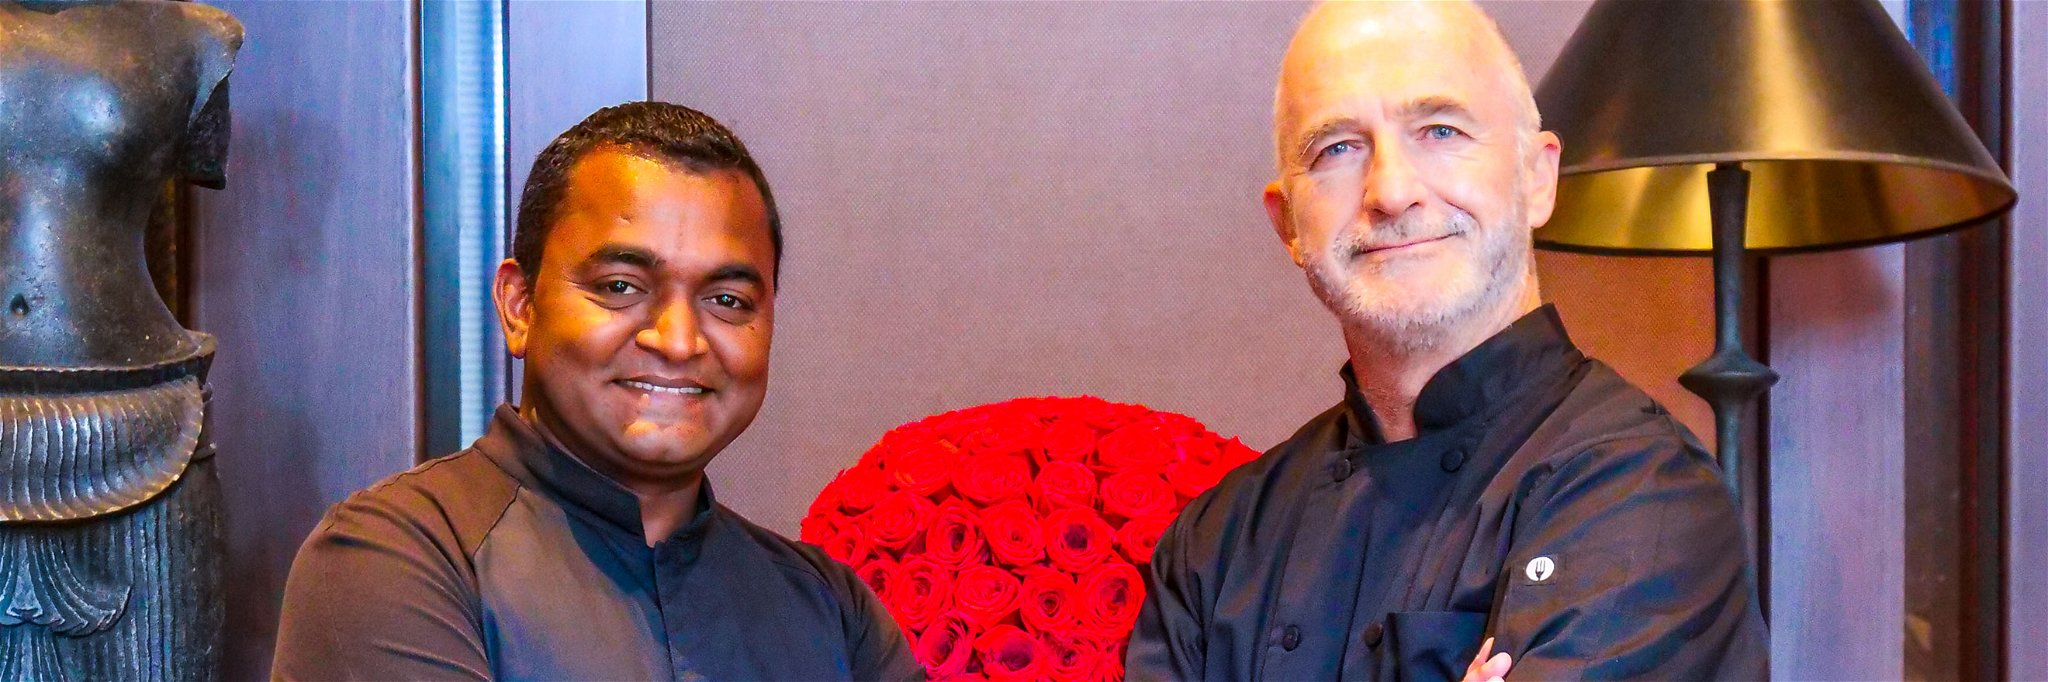 «The Setai» Küchenchef Vijayudu Veena und Richard Kägi, Foodscout für die Globus delicatessa